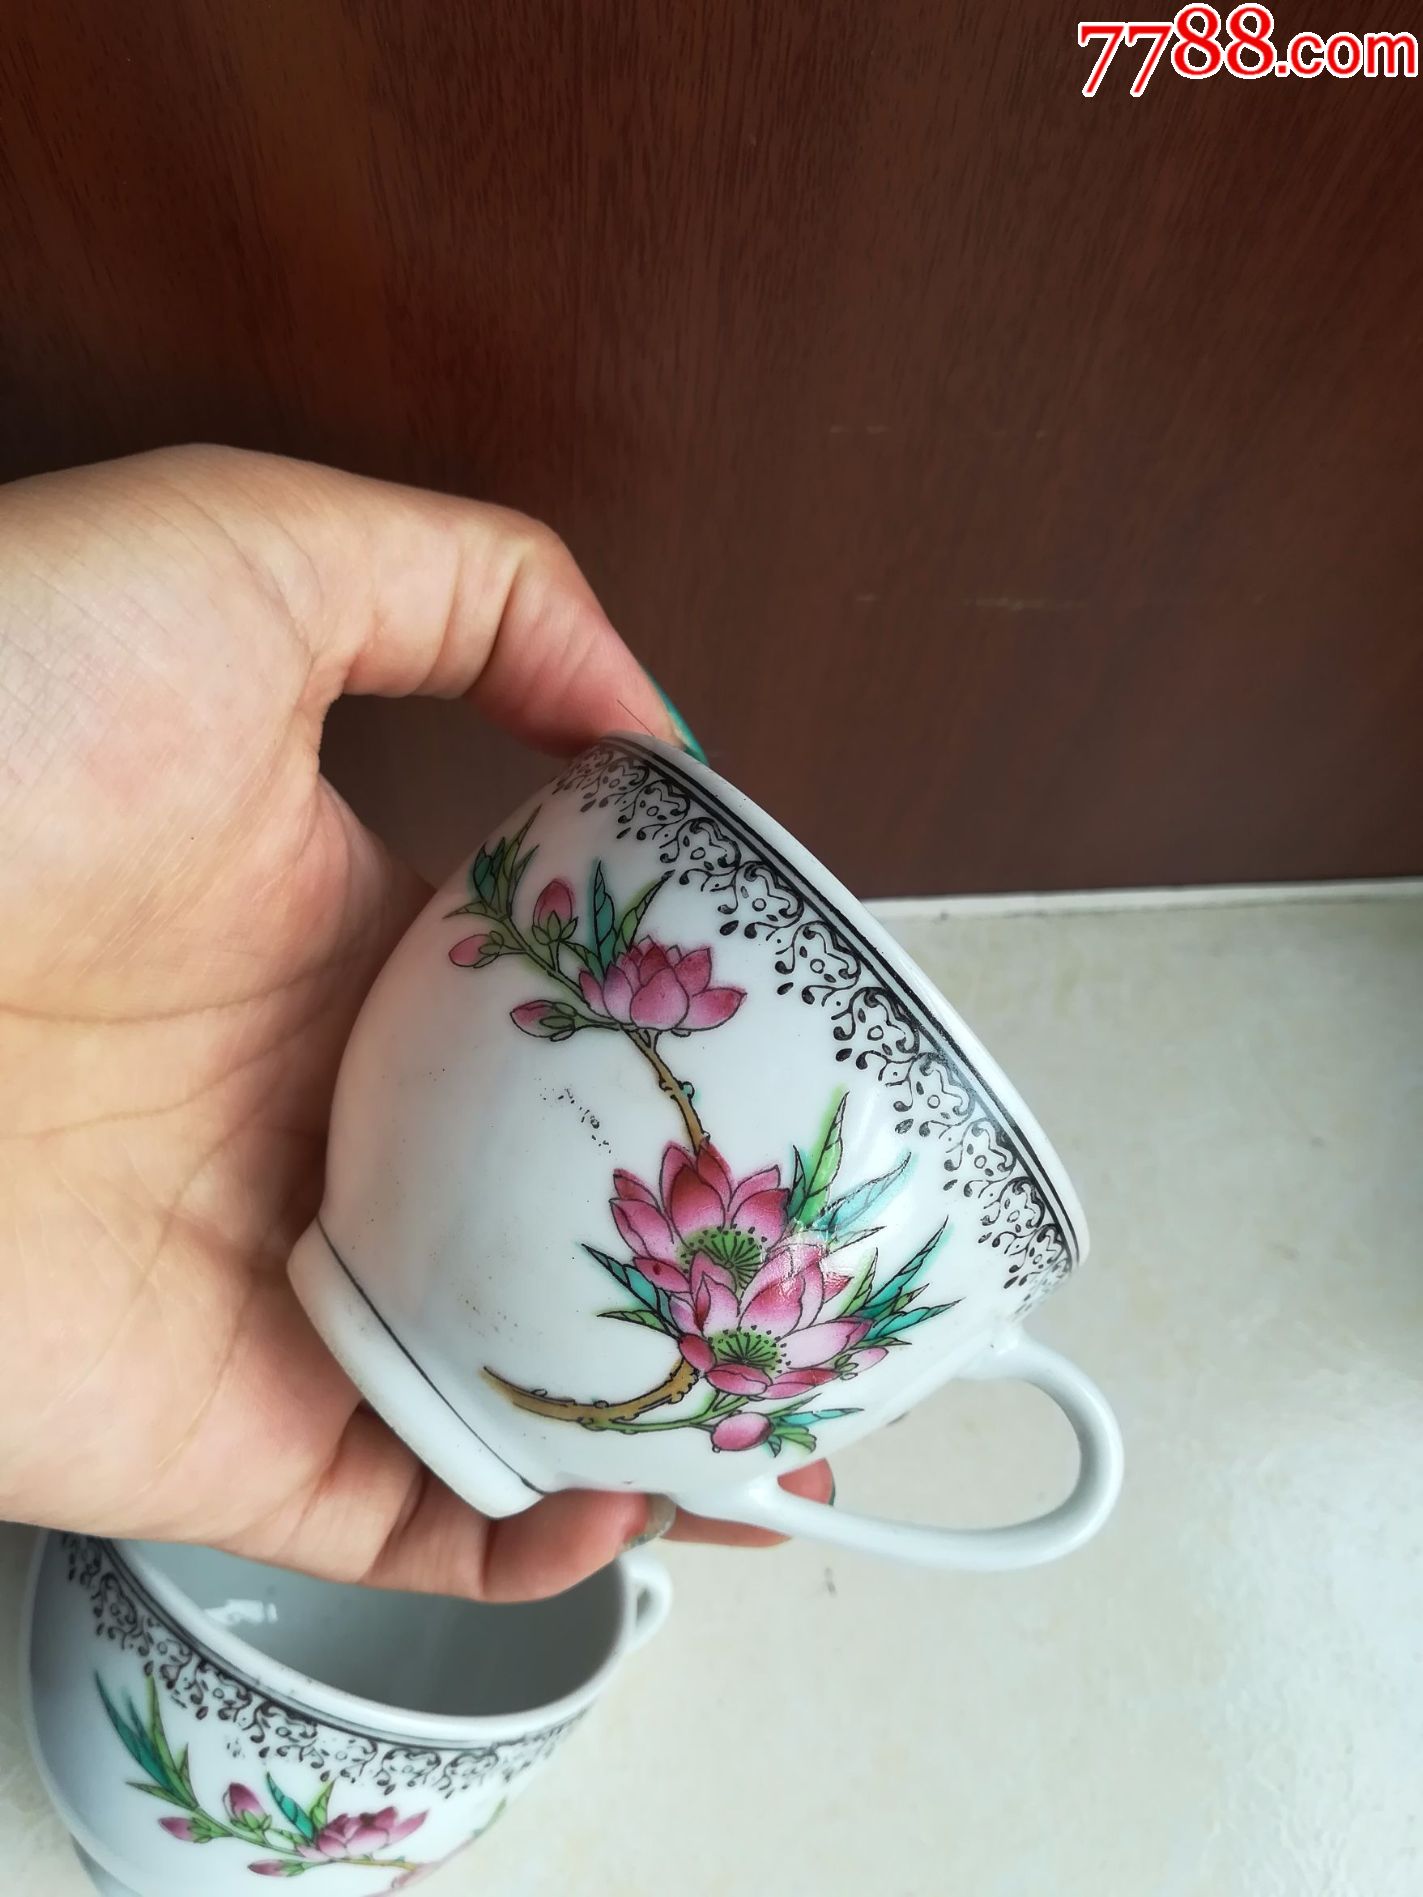 怀旧经典收藏瓷器五十年代景德镇手绘花卉图案小瓷杯一对